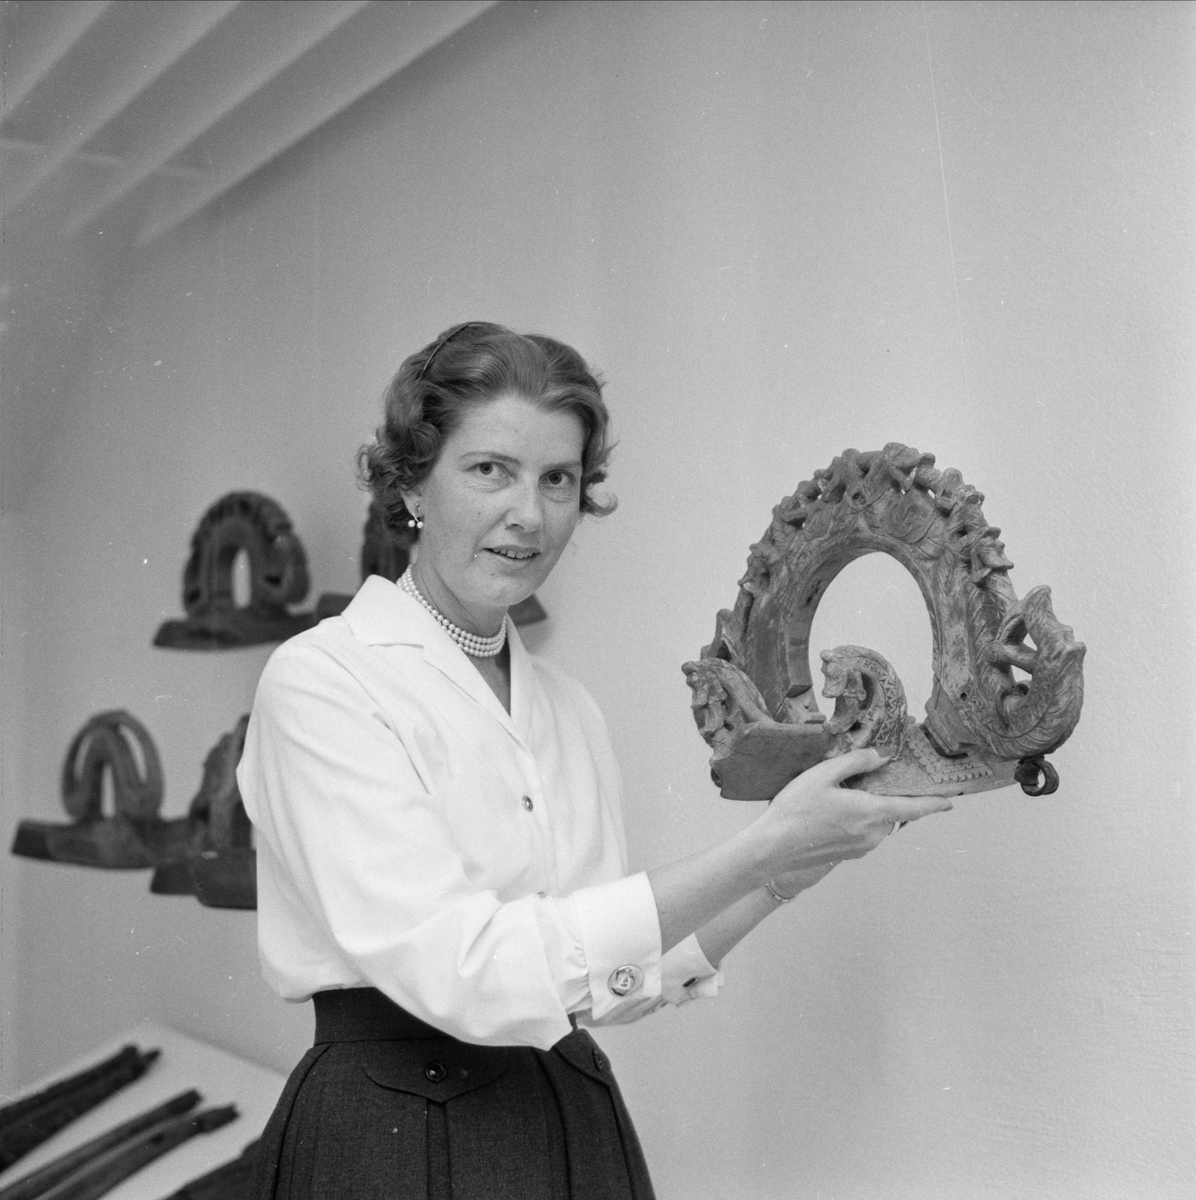 Anna-Märta Berg med selbåge på Upplandsmuseet som "slår upp portarna till stilfull kontakt med kultur", Uppsala juni 1959